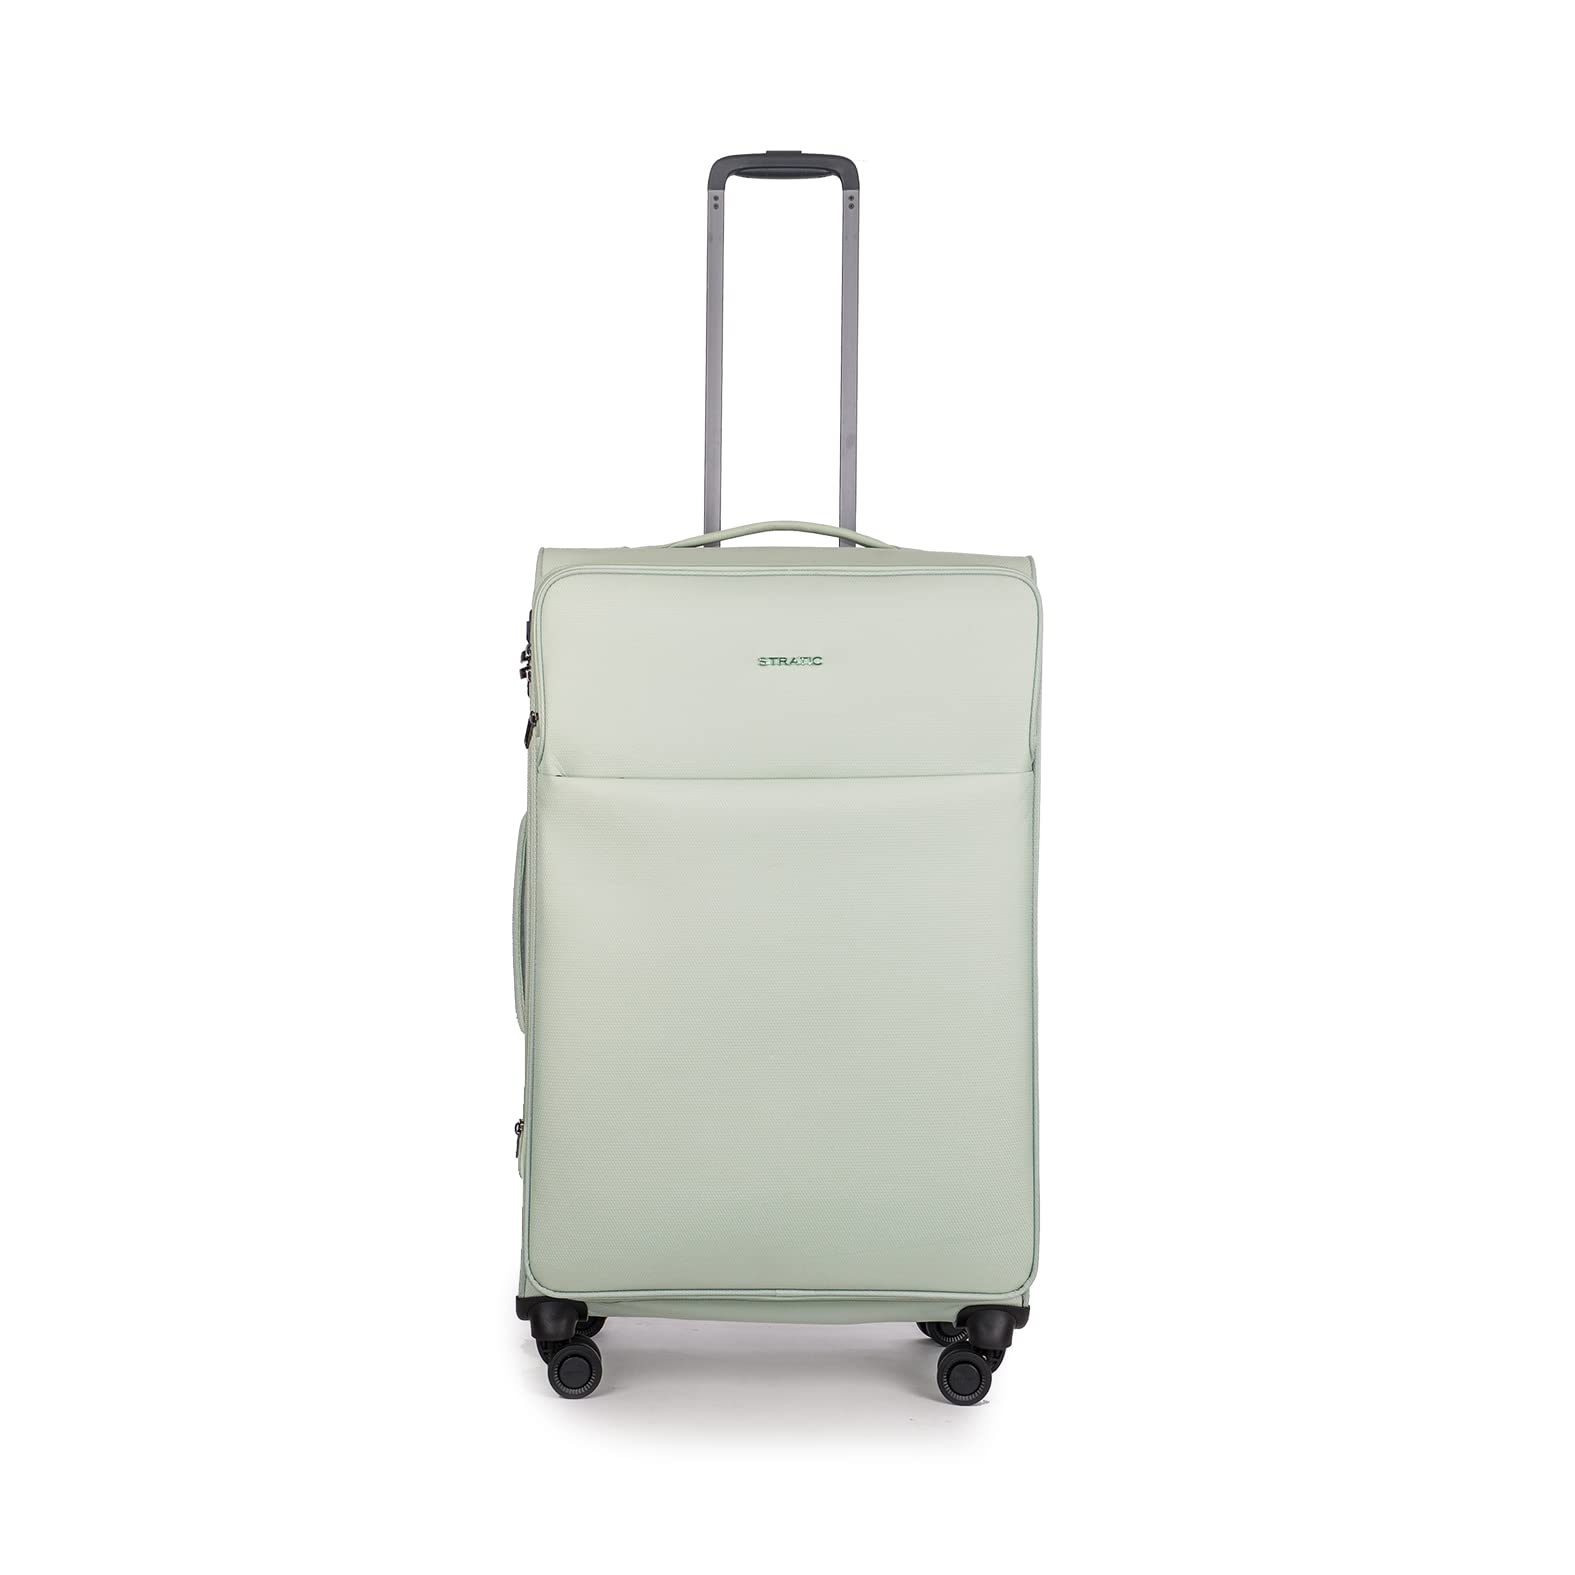 Stratic Light + Koffer Weichschale Reisekoffer Trolley Rollkoffer groß, TSA Kofferschloss, 4 Rollen, Erweiterbar, Größe L, Mint